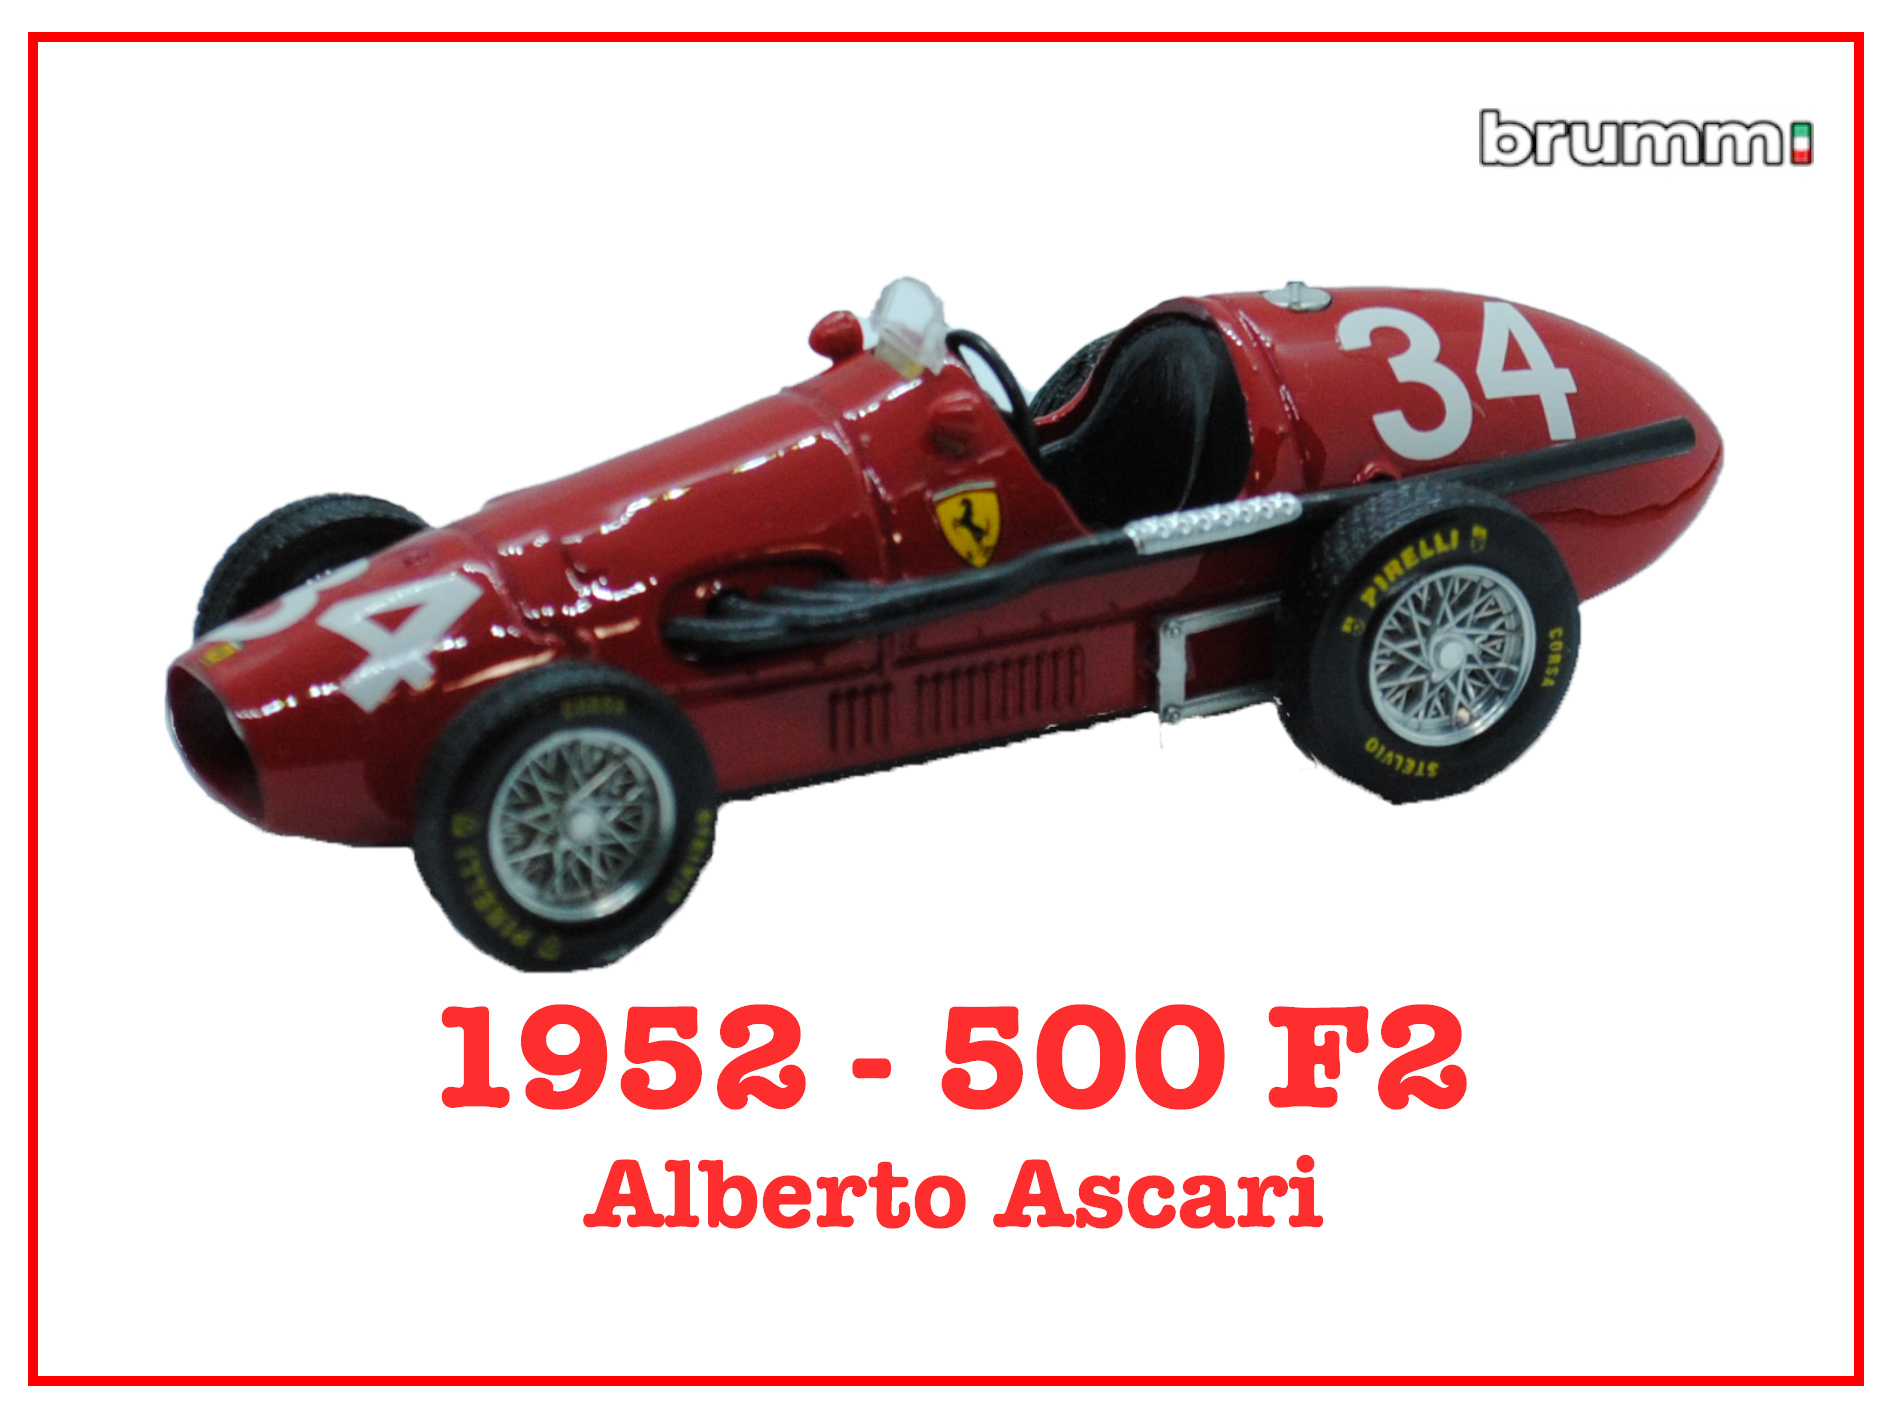 Immagine 500 F2 - alberto Ascari